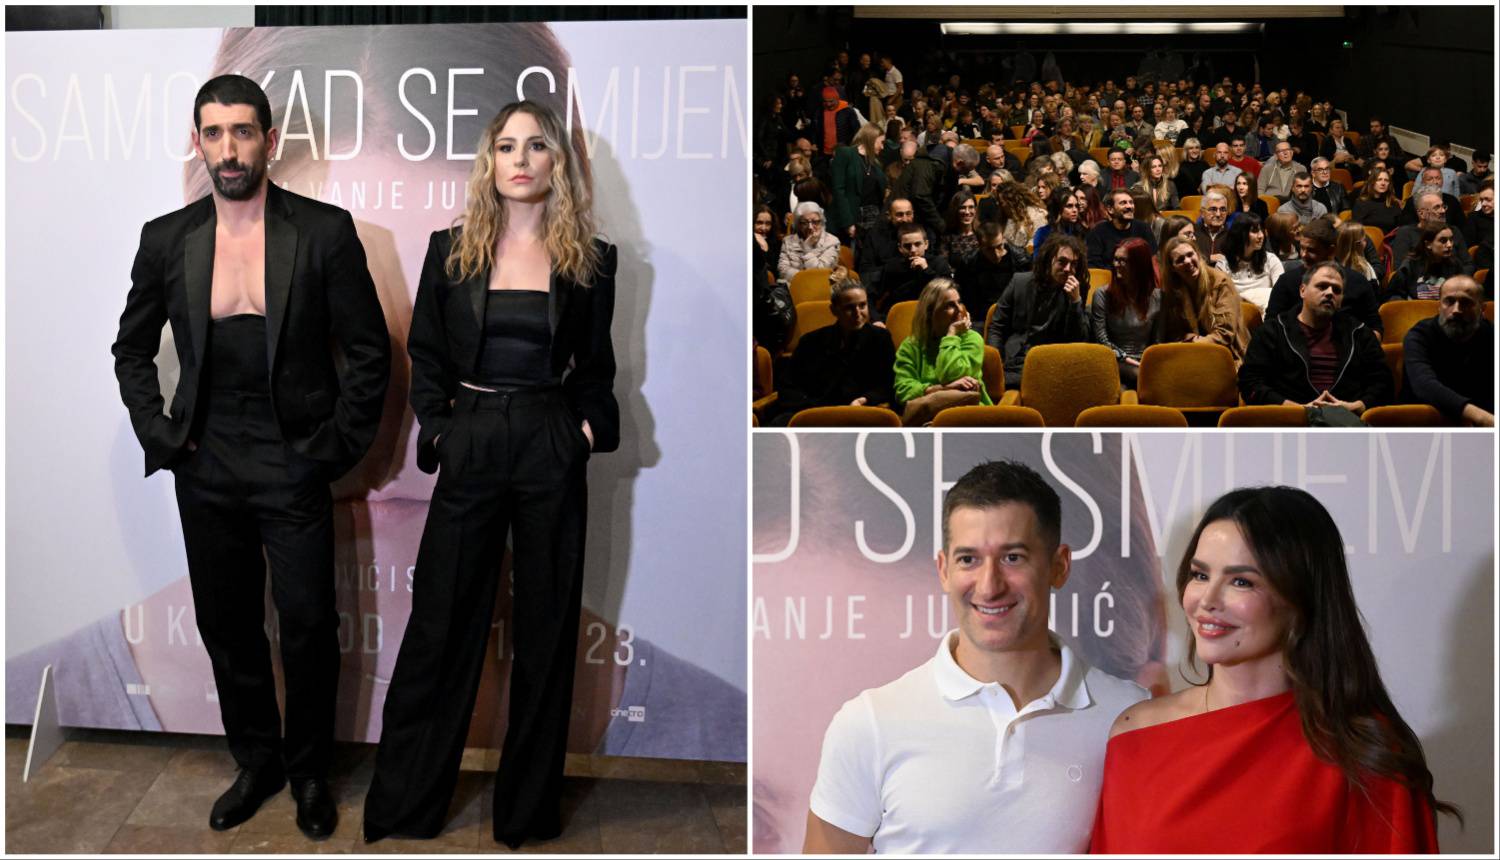 Svečana premijera filma 'Samo kad se smijem': Stigli Severina, Filip Miletić, Luka Nižetić i drugi